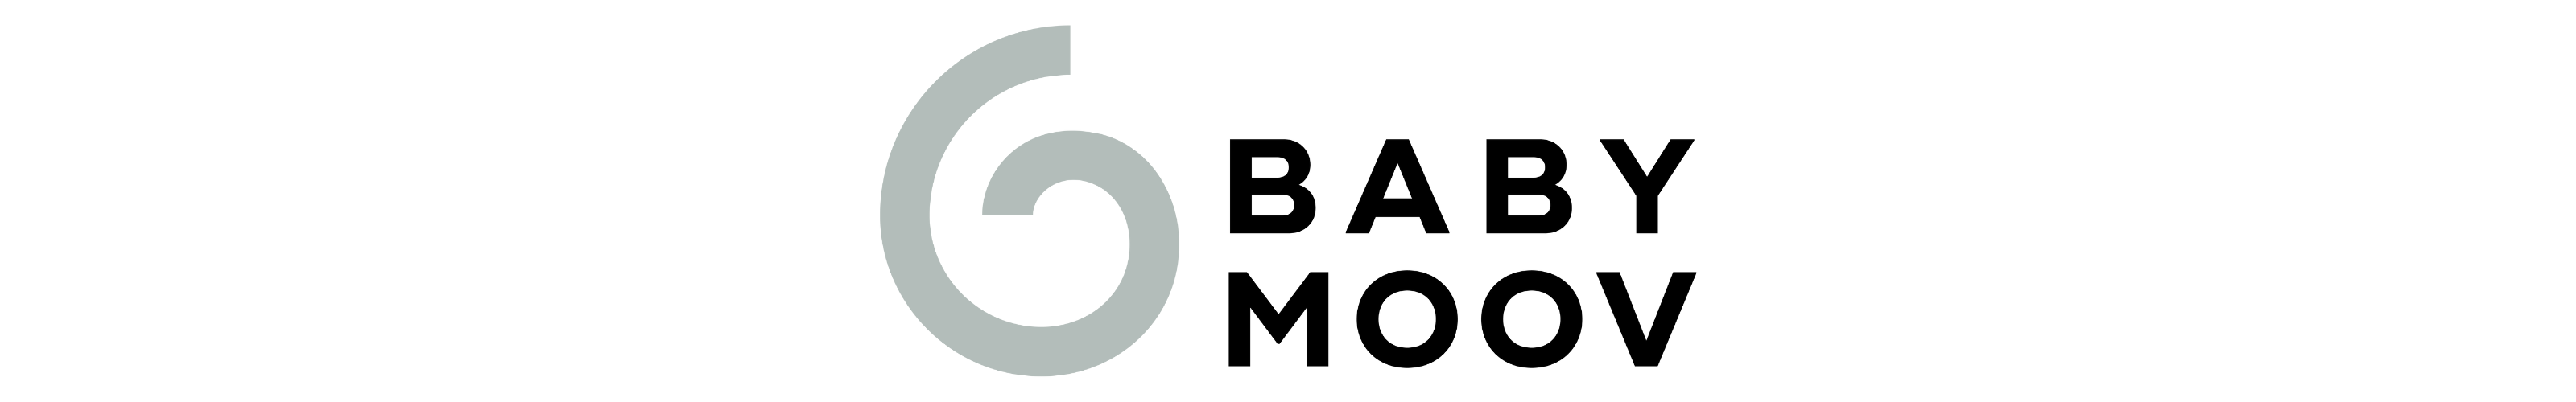 Die Marke Babymoov